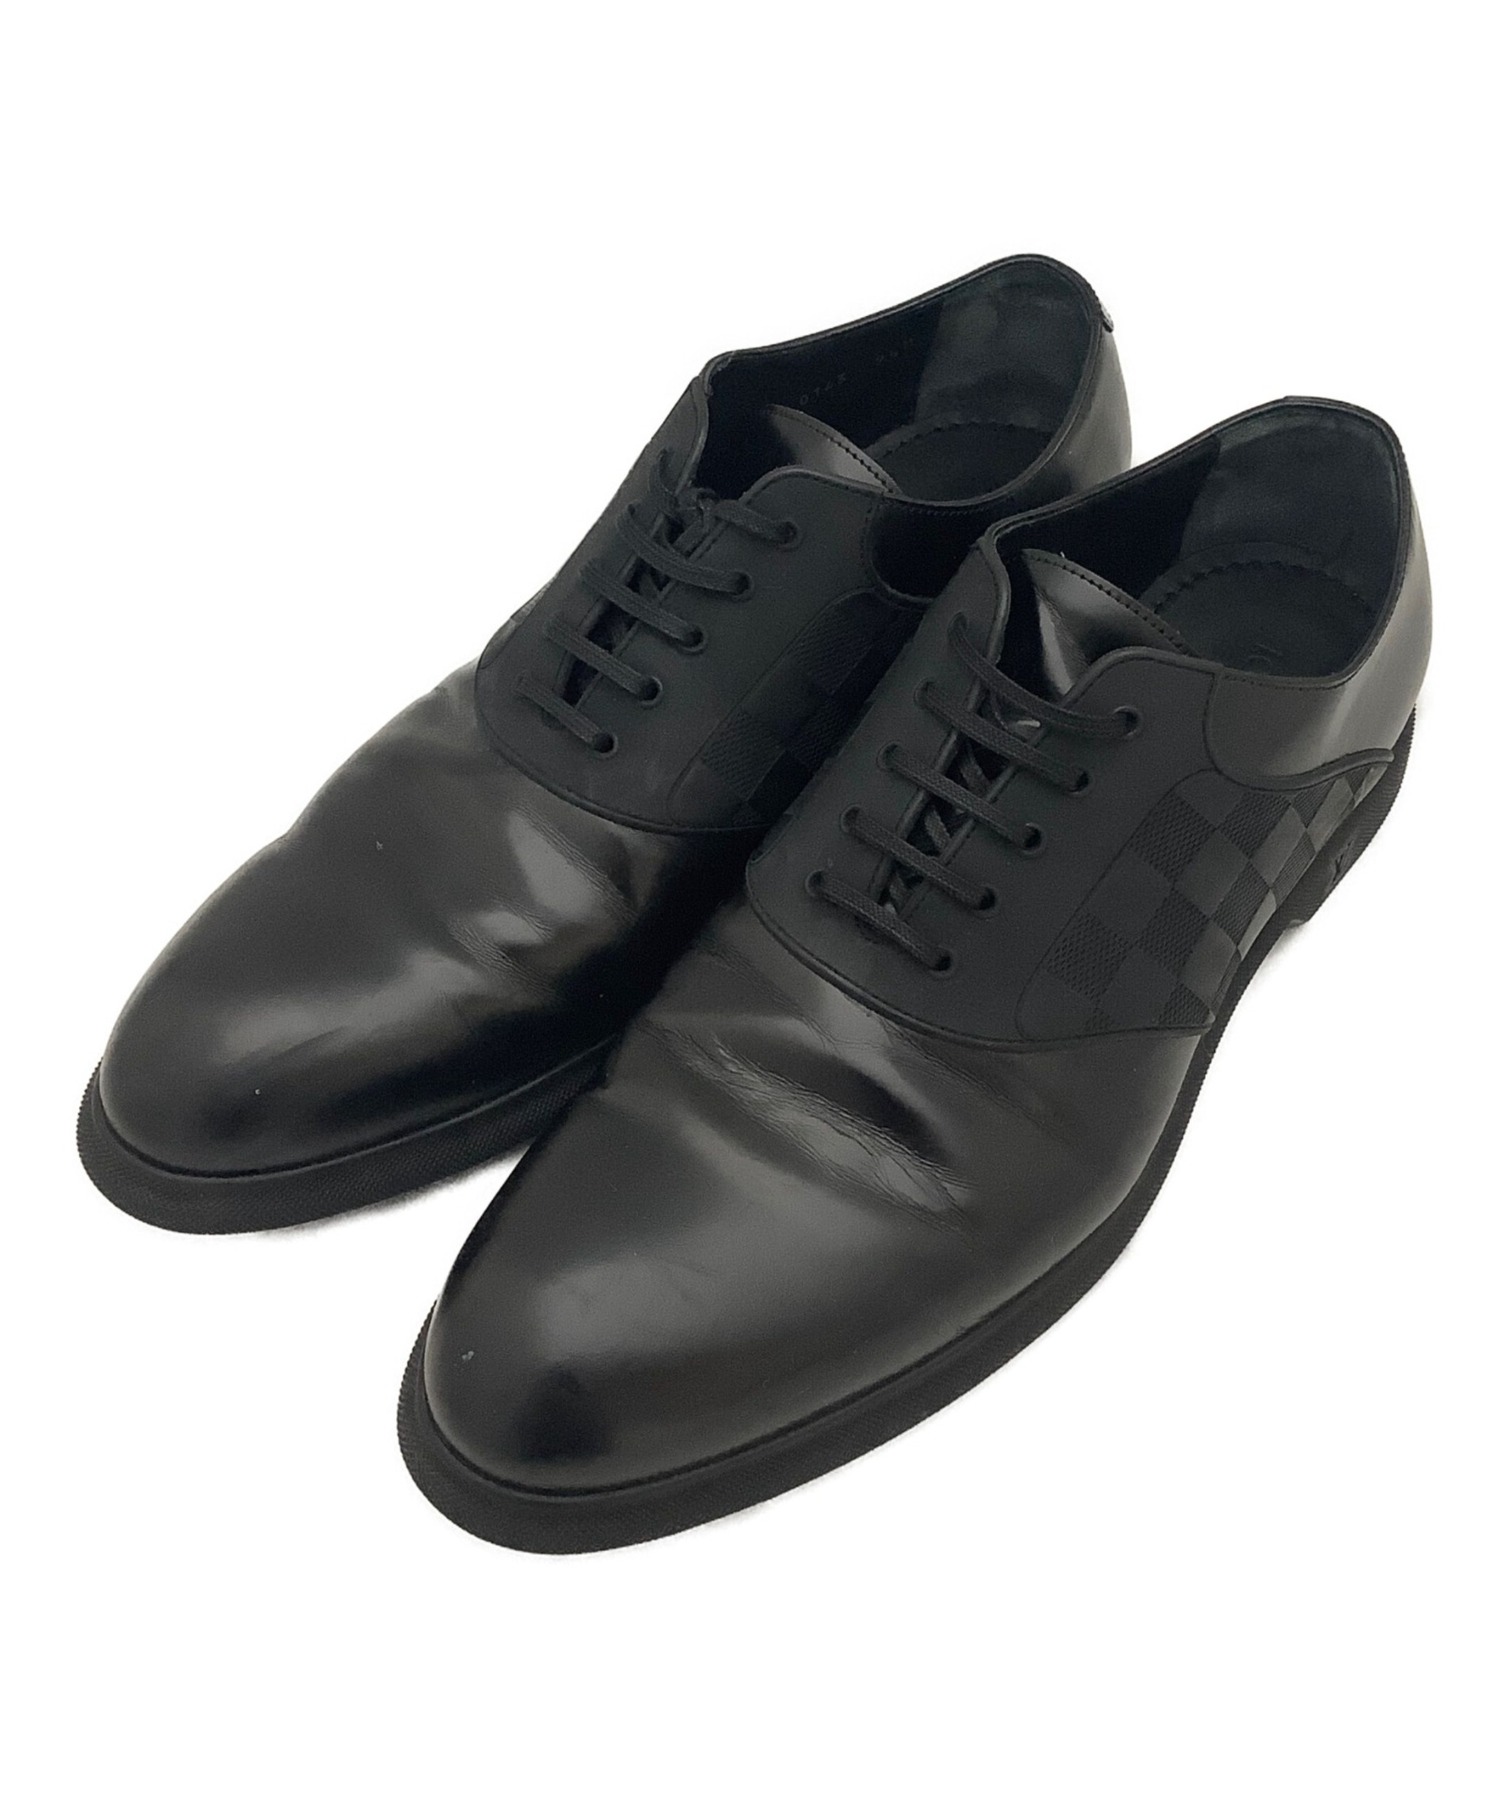 ルイヴィトン LOUIS VUITTON レザーシューズ ダミエ オックスフォード ビジネスシューズ シューズ 革靴 メンズ 9 1/2M(28cm相当) ブラック